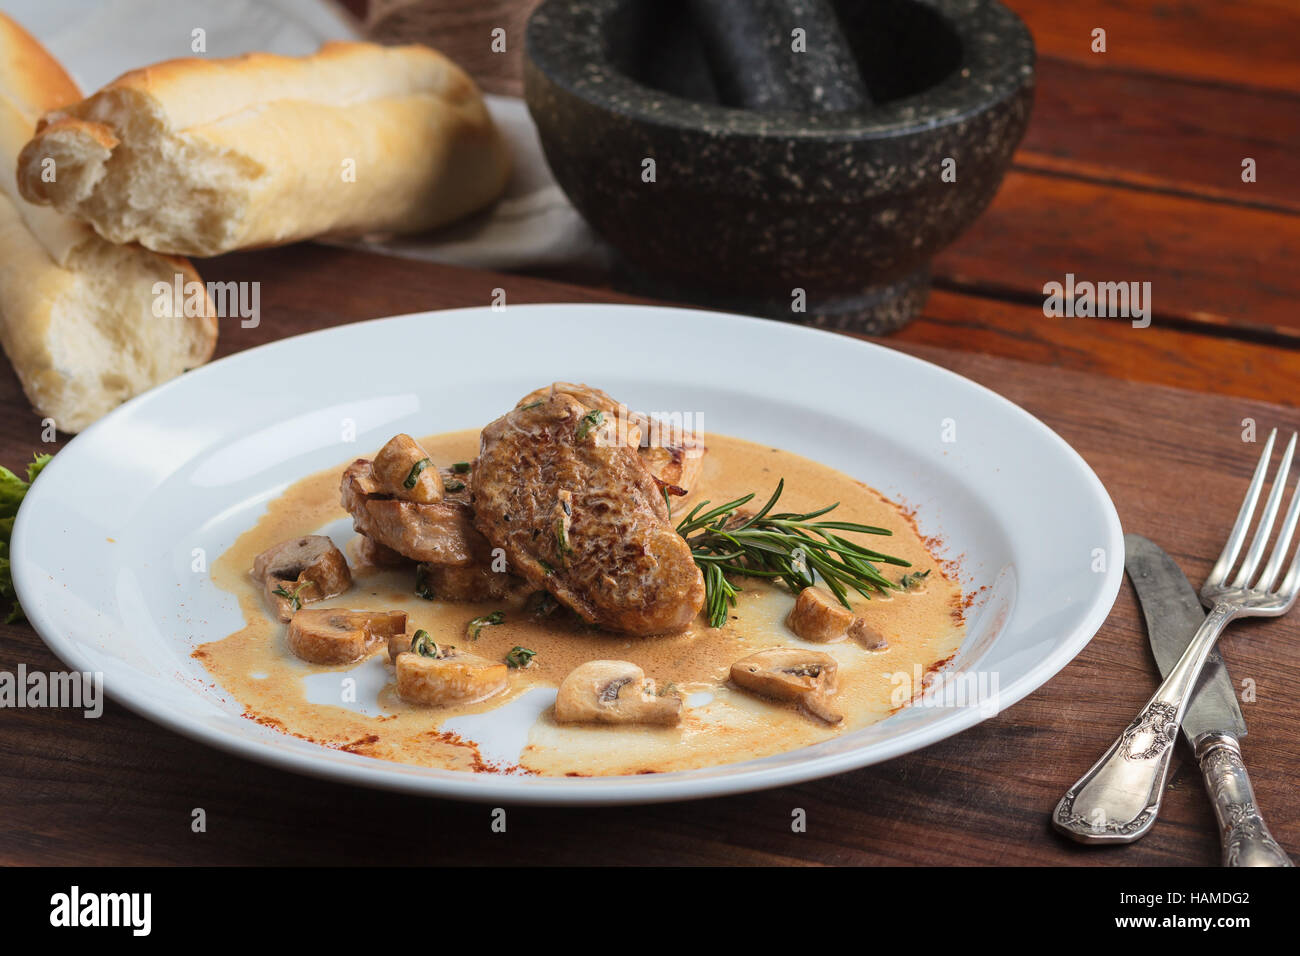 Concept : Les menus de restaurant, d'une saine alimentation, faits maison, gourmands, la gourmandise. Plaque blanche de médaillons de porc sauce aux champignons sur table en bois patiné Banque D'Images